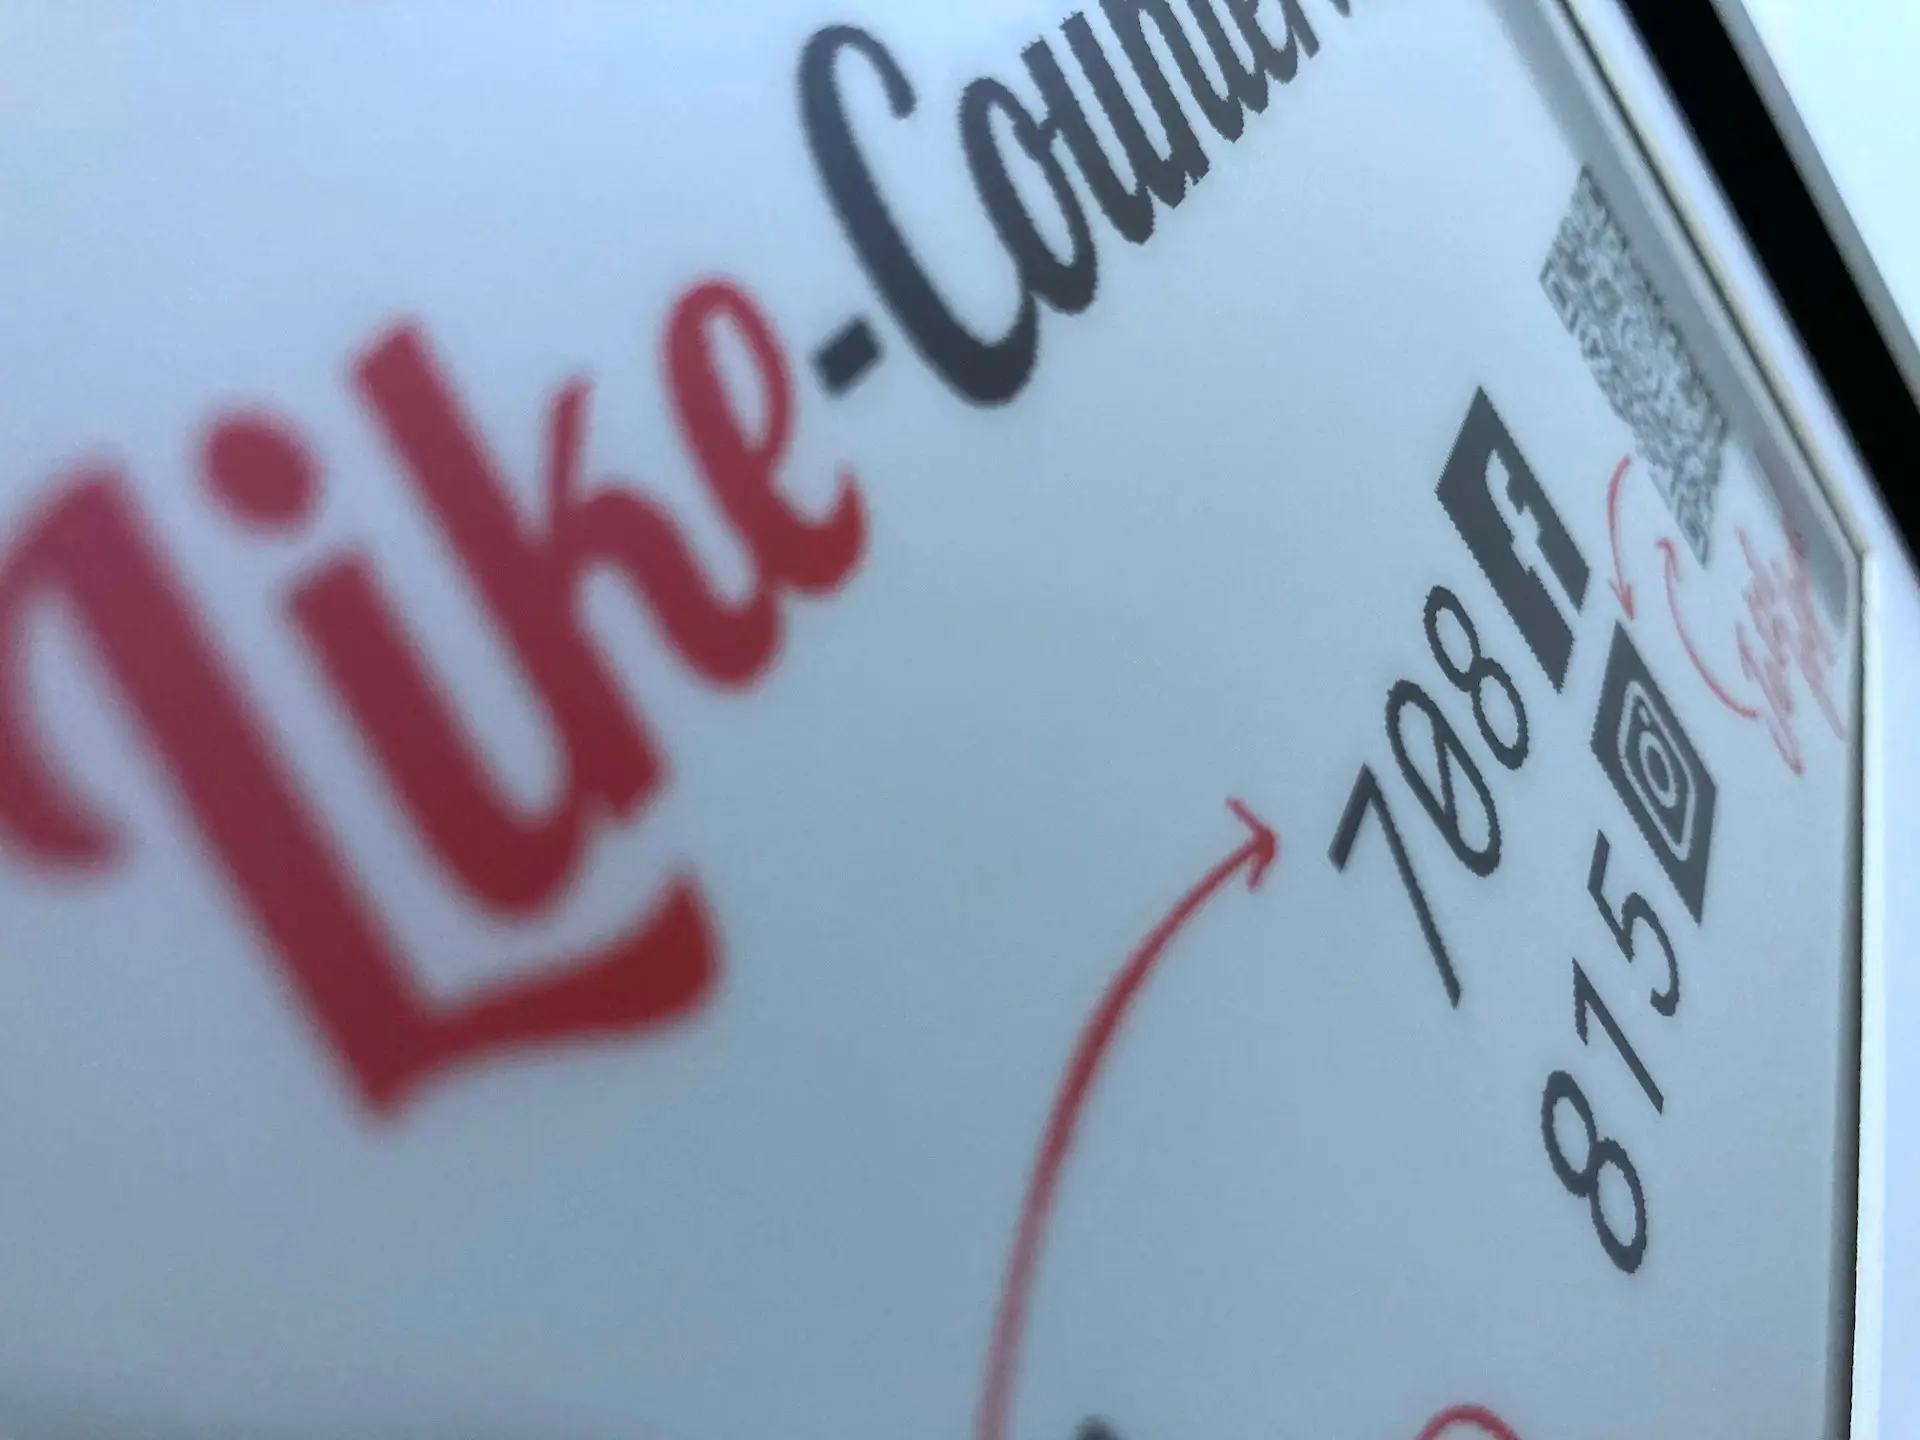 Zur Anzeige deiner Likes und Follower von Instagram und Facebook verwendet der Like Counter ein E-Paper Bildschirm. Und dafür gibt es gute Gründe.